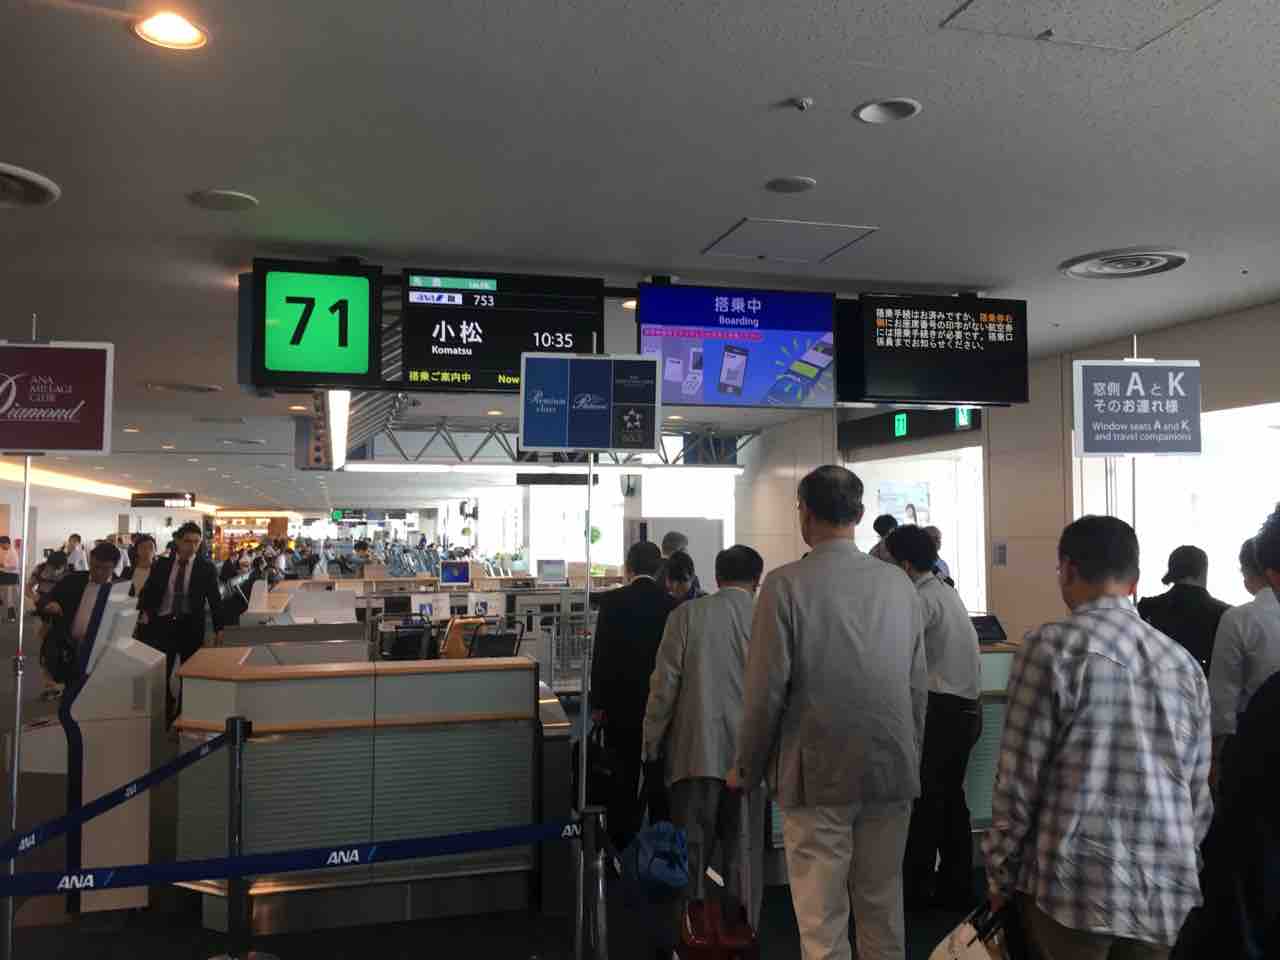 京急で羽田空港へ ホームから保安検査場 搭乗口まで猛ダッシュで何分かかるか試してみた 弾丸フライヤー